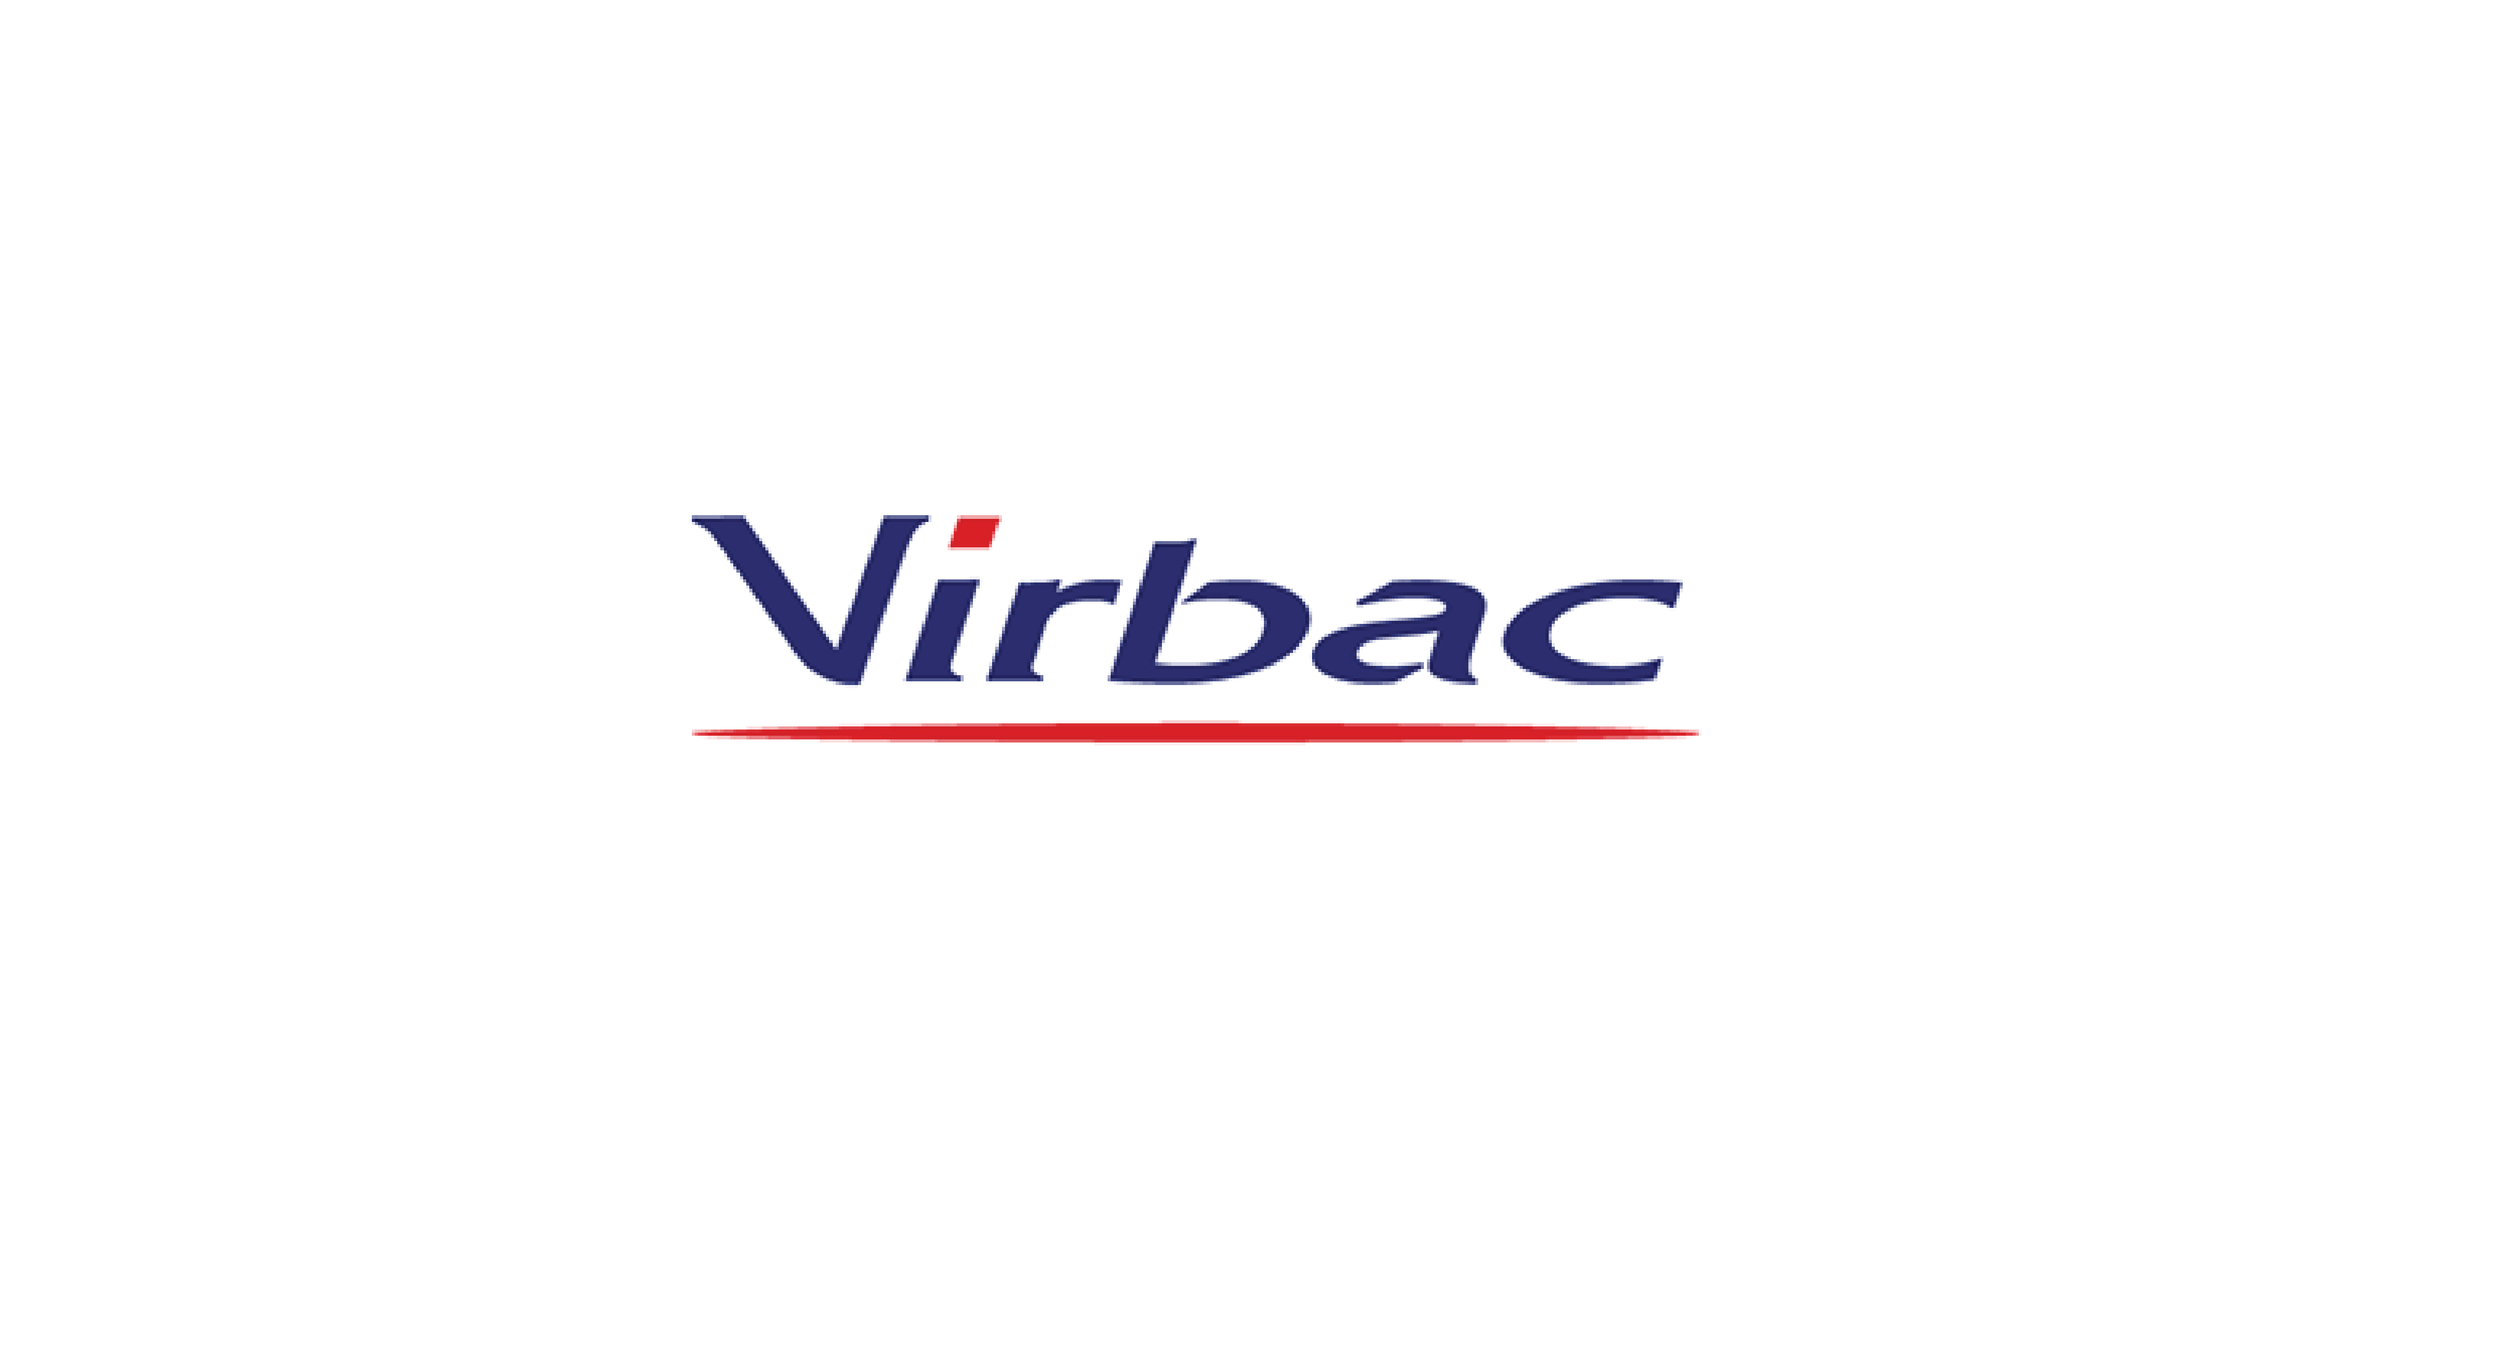 virbac logo.png